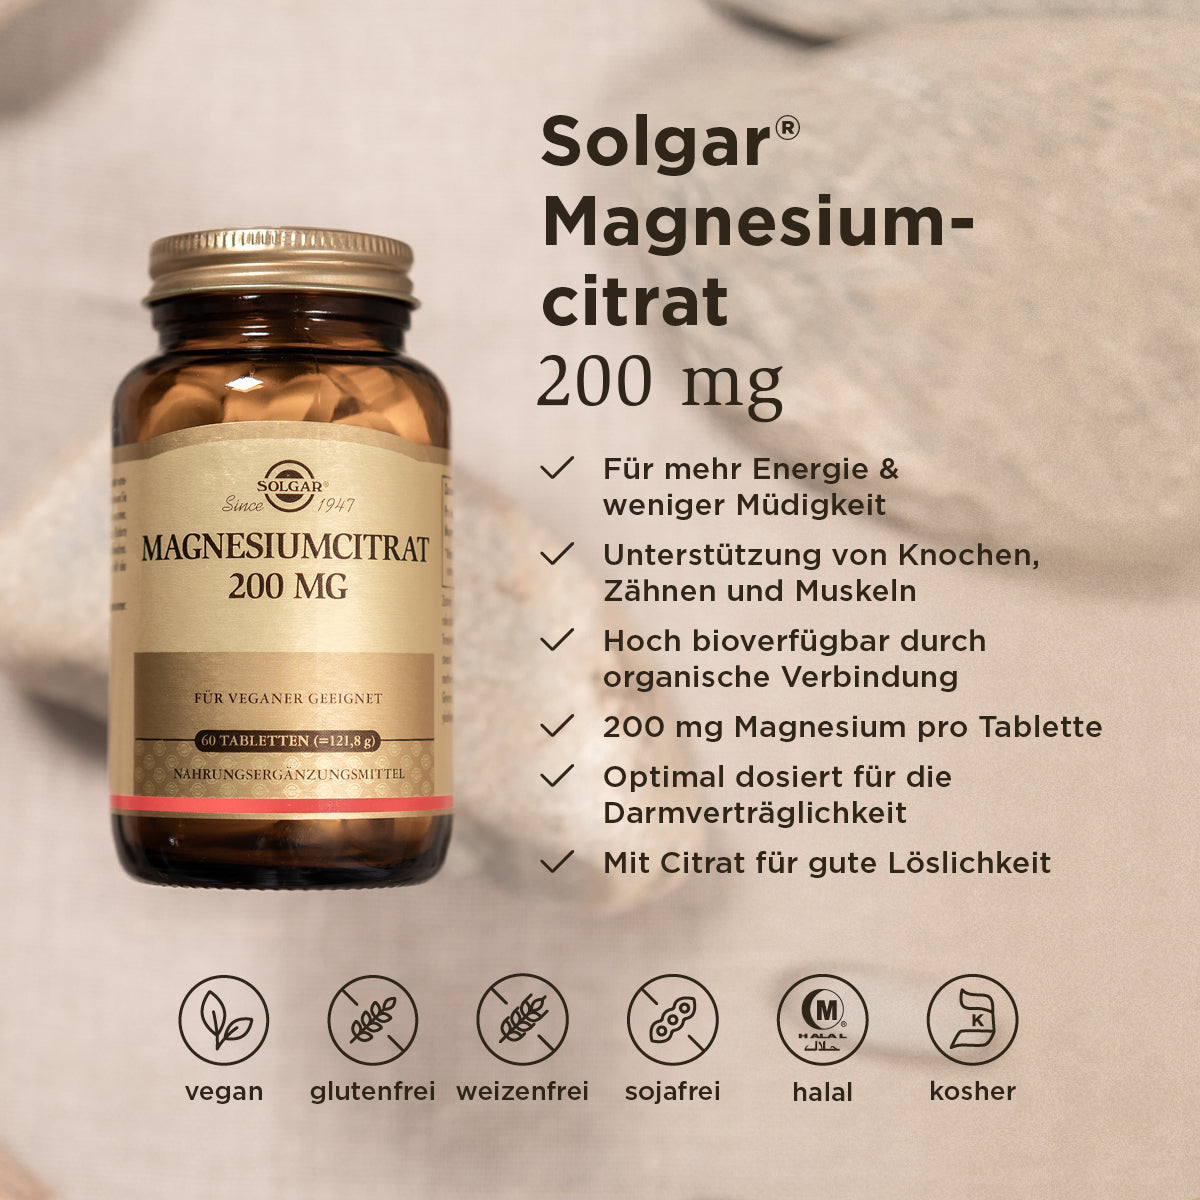 Grafik der Benefits der Solgar Magnesiumtabletten